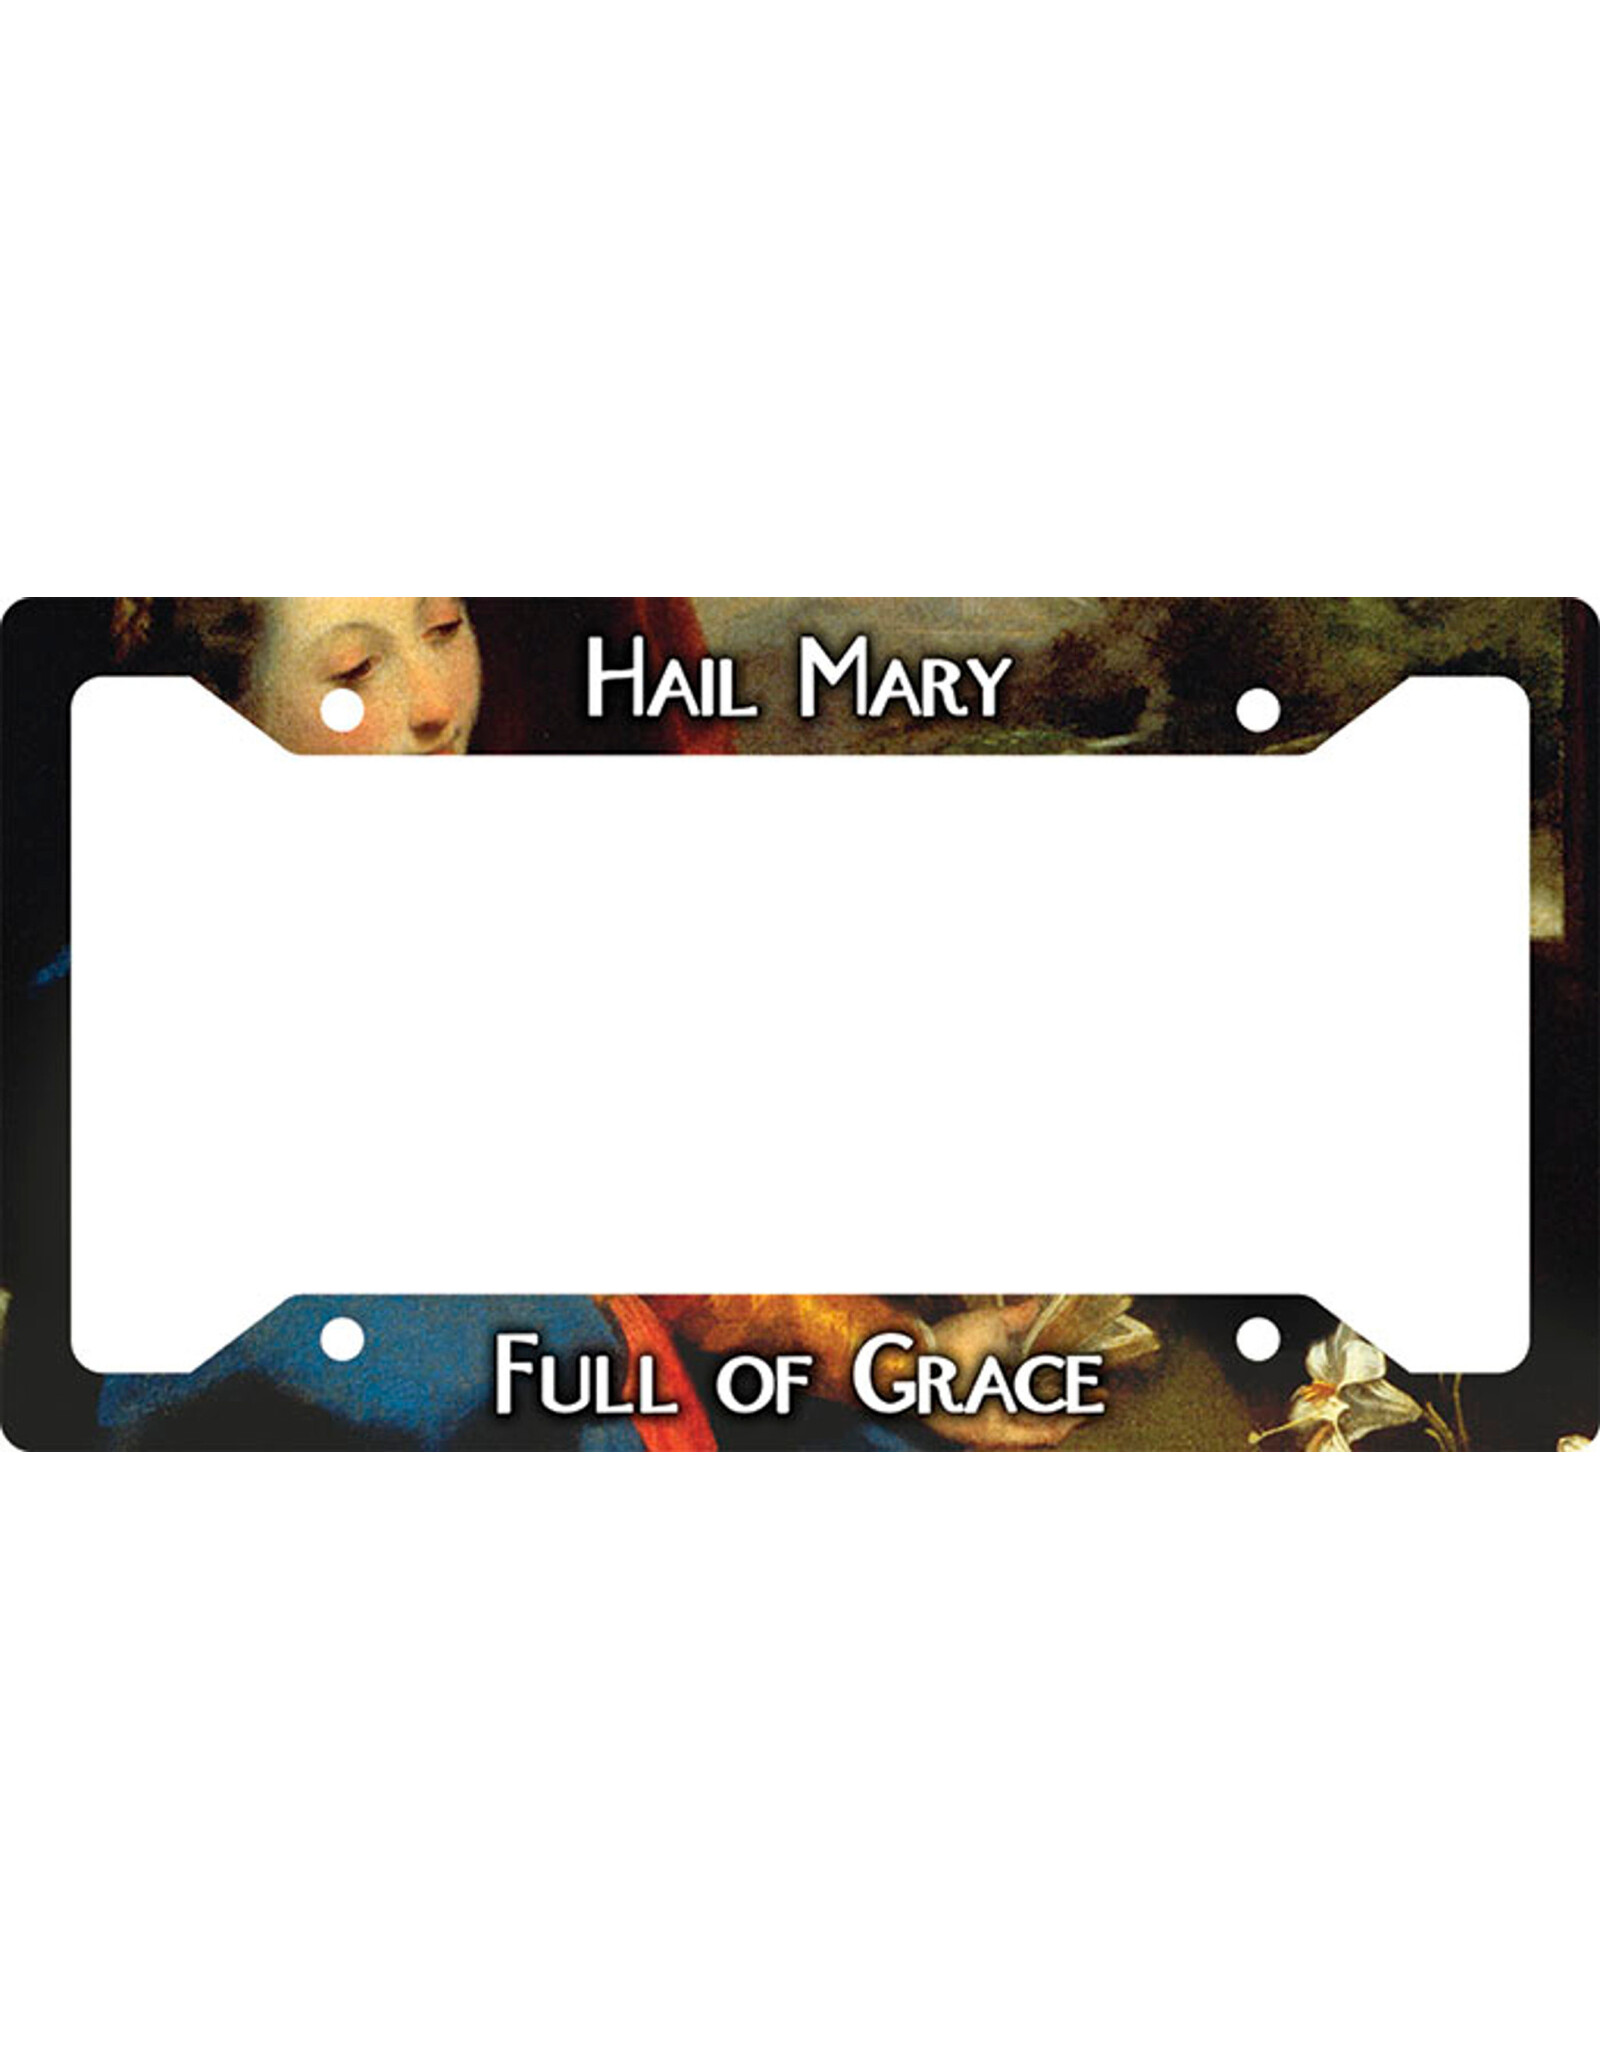 Nelson Art License Plate Frame Cover - Hail Mary